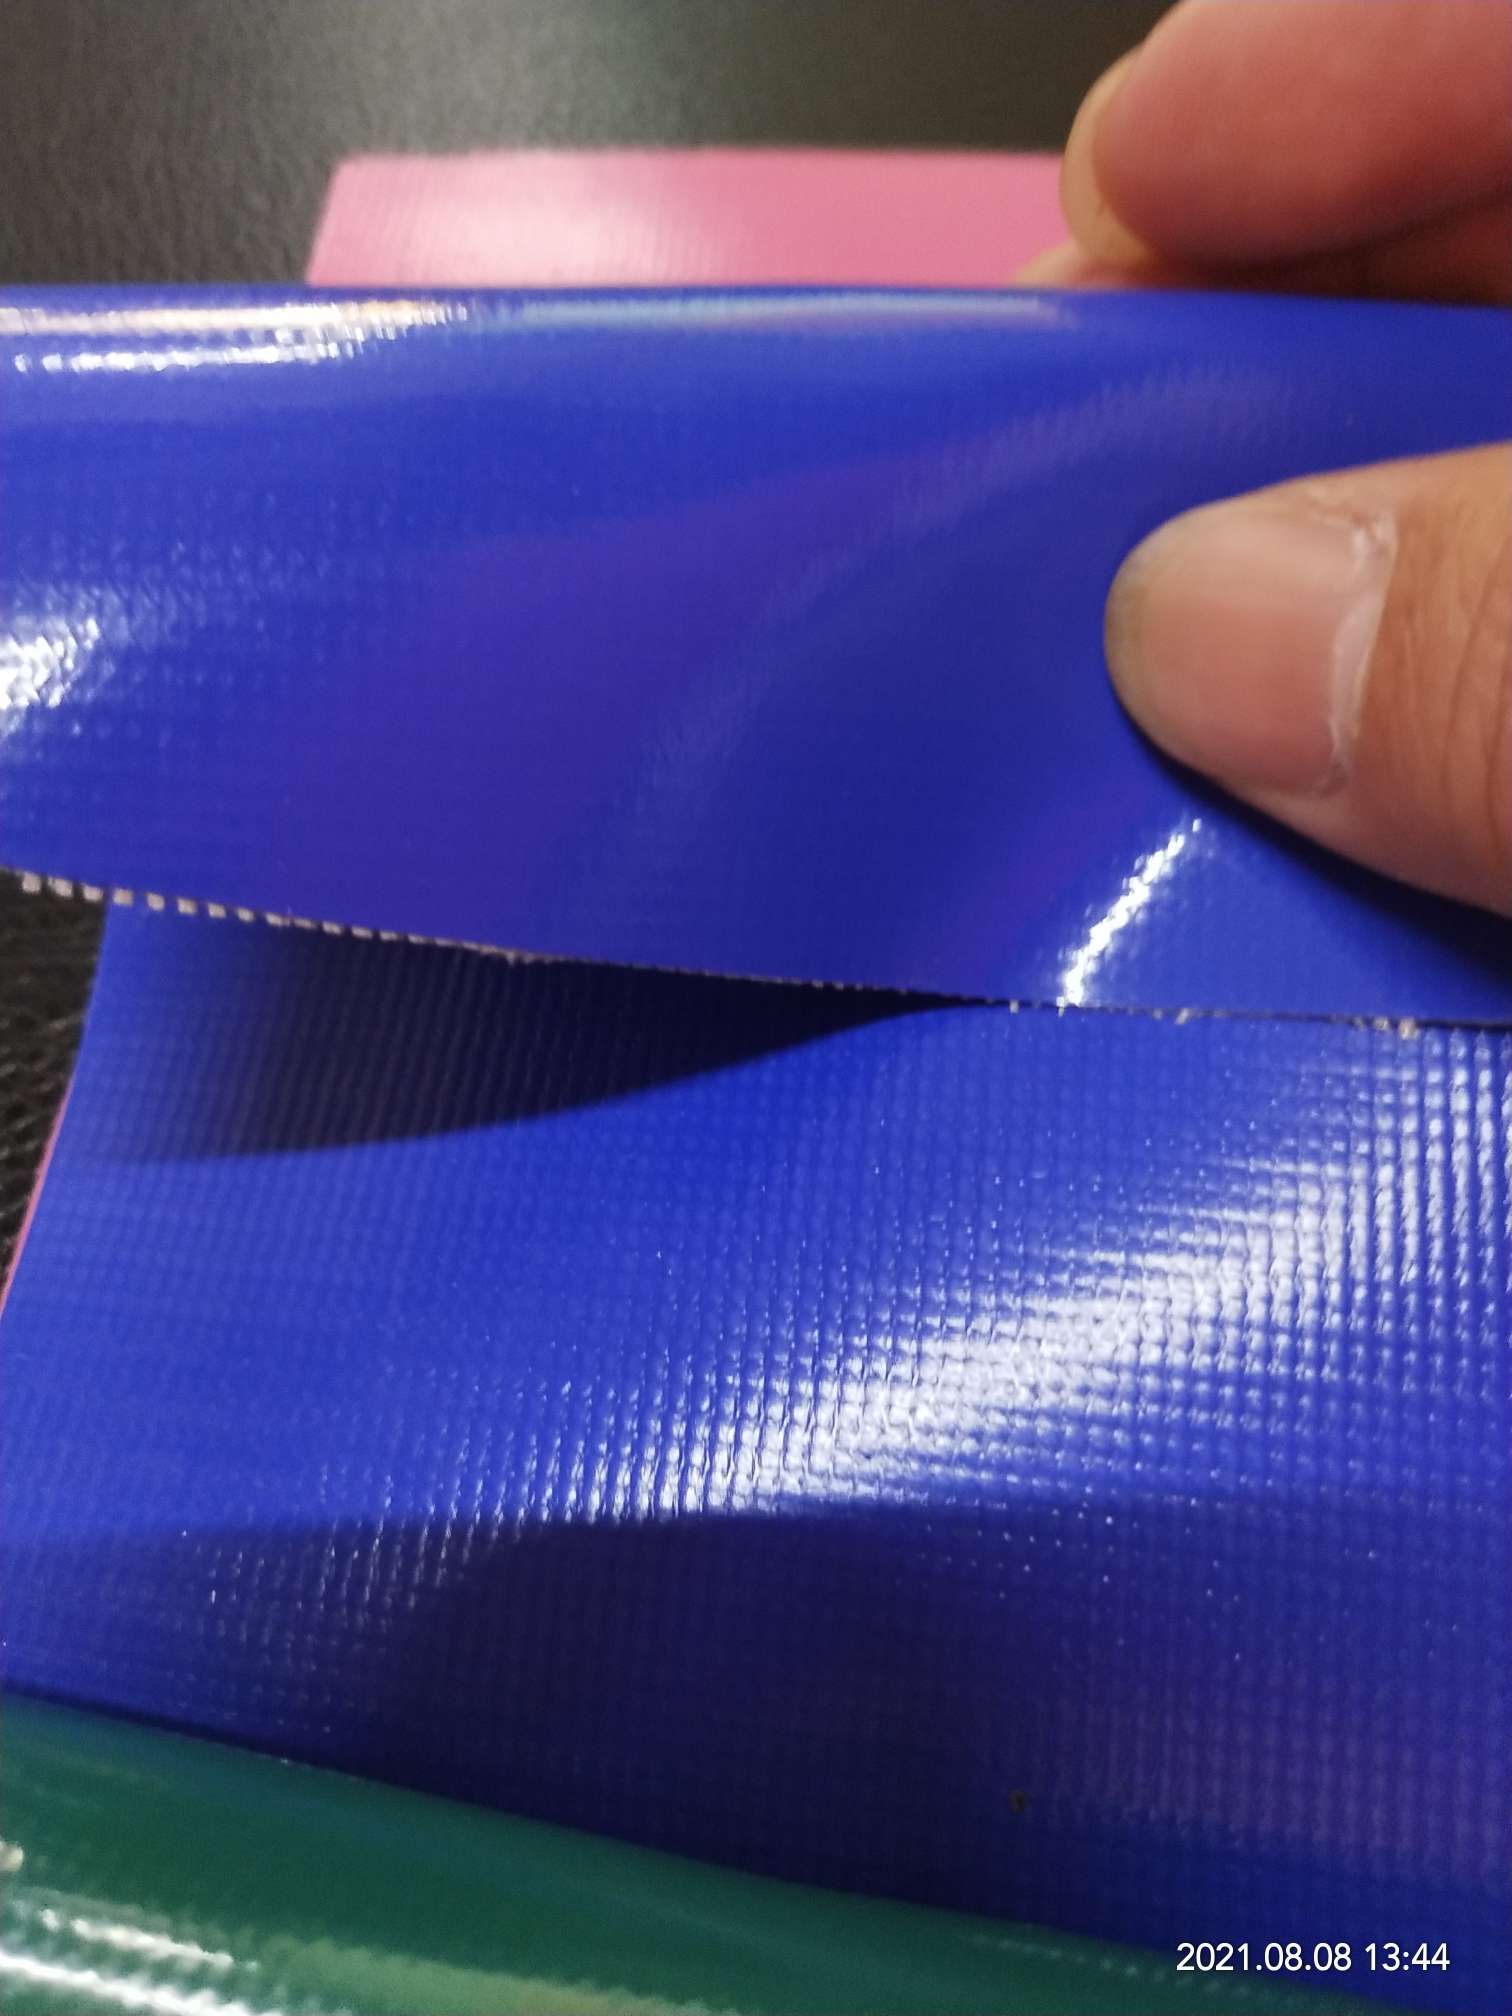 优质光面0.47mm厚深蓝色PVC夹网布  箱包布  机器罩家具罩  体育游乐产品  格种箱包袋专用面料详情图1